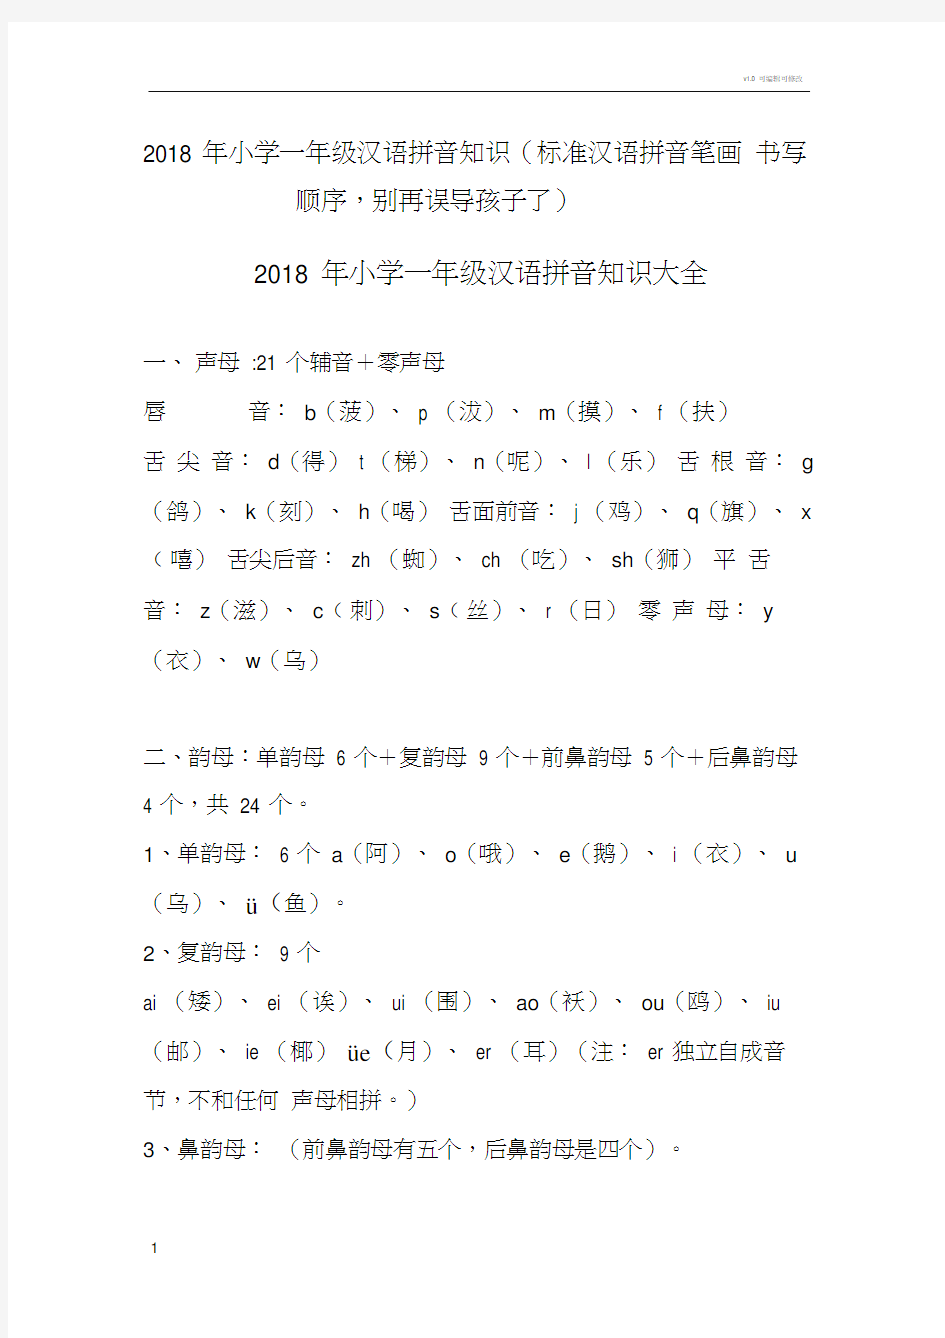 小学一年级汉语拼音知识(标准汉语拼音笔画书写顺序,别再误导孩子了)